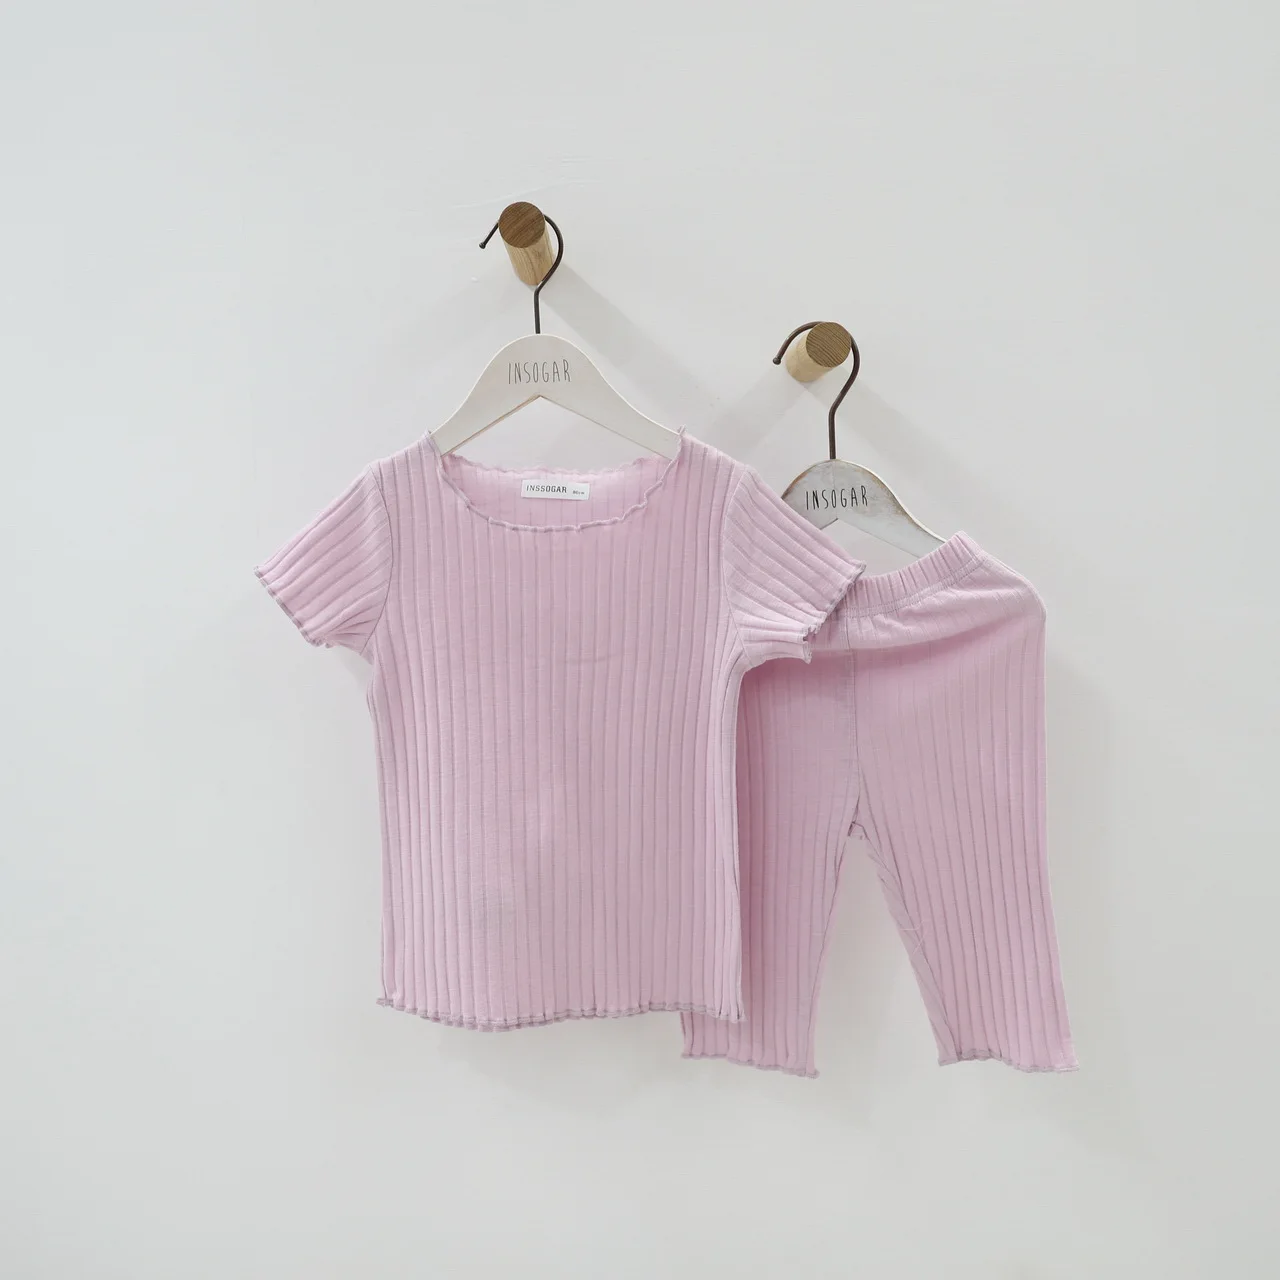 Наряды для Дня благодарения для малышей г., летний детский пижамный комплект для девочек, костюм с жилетом - Цвет: Фиолетовый